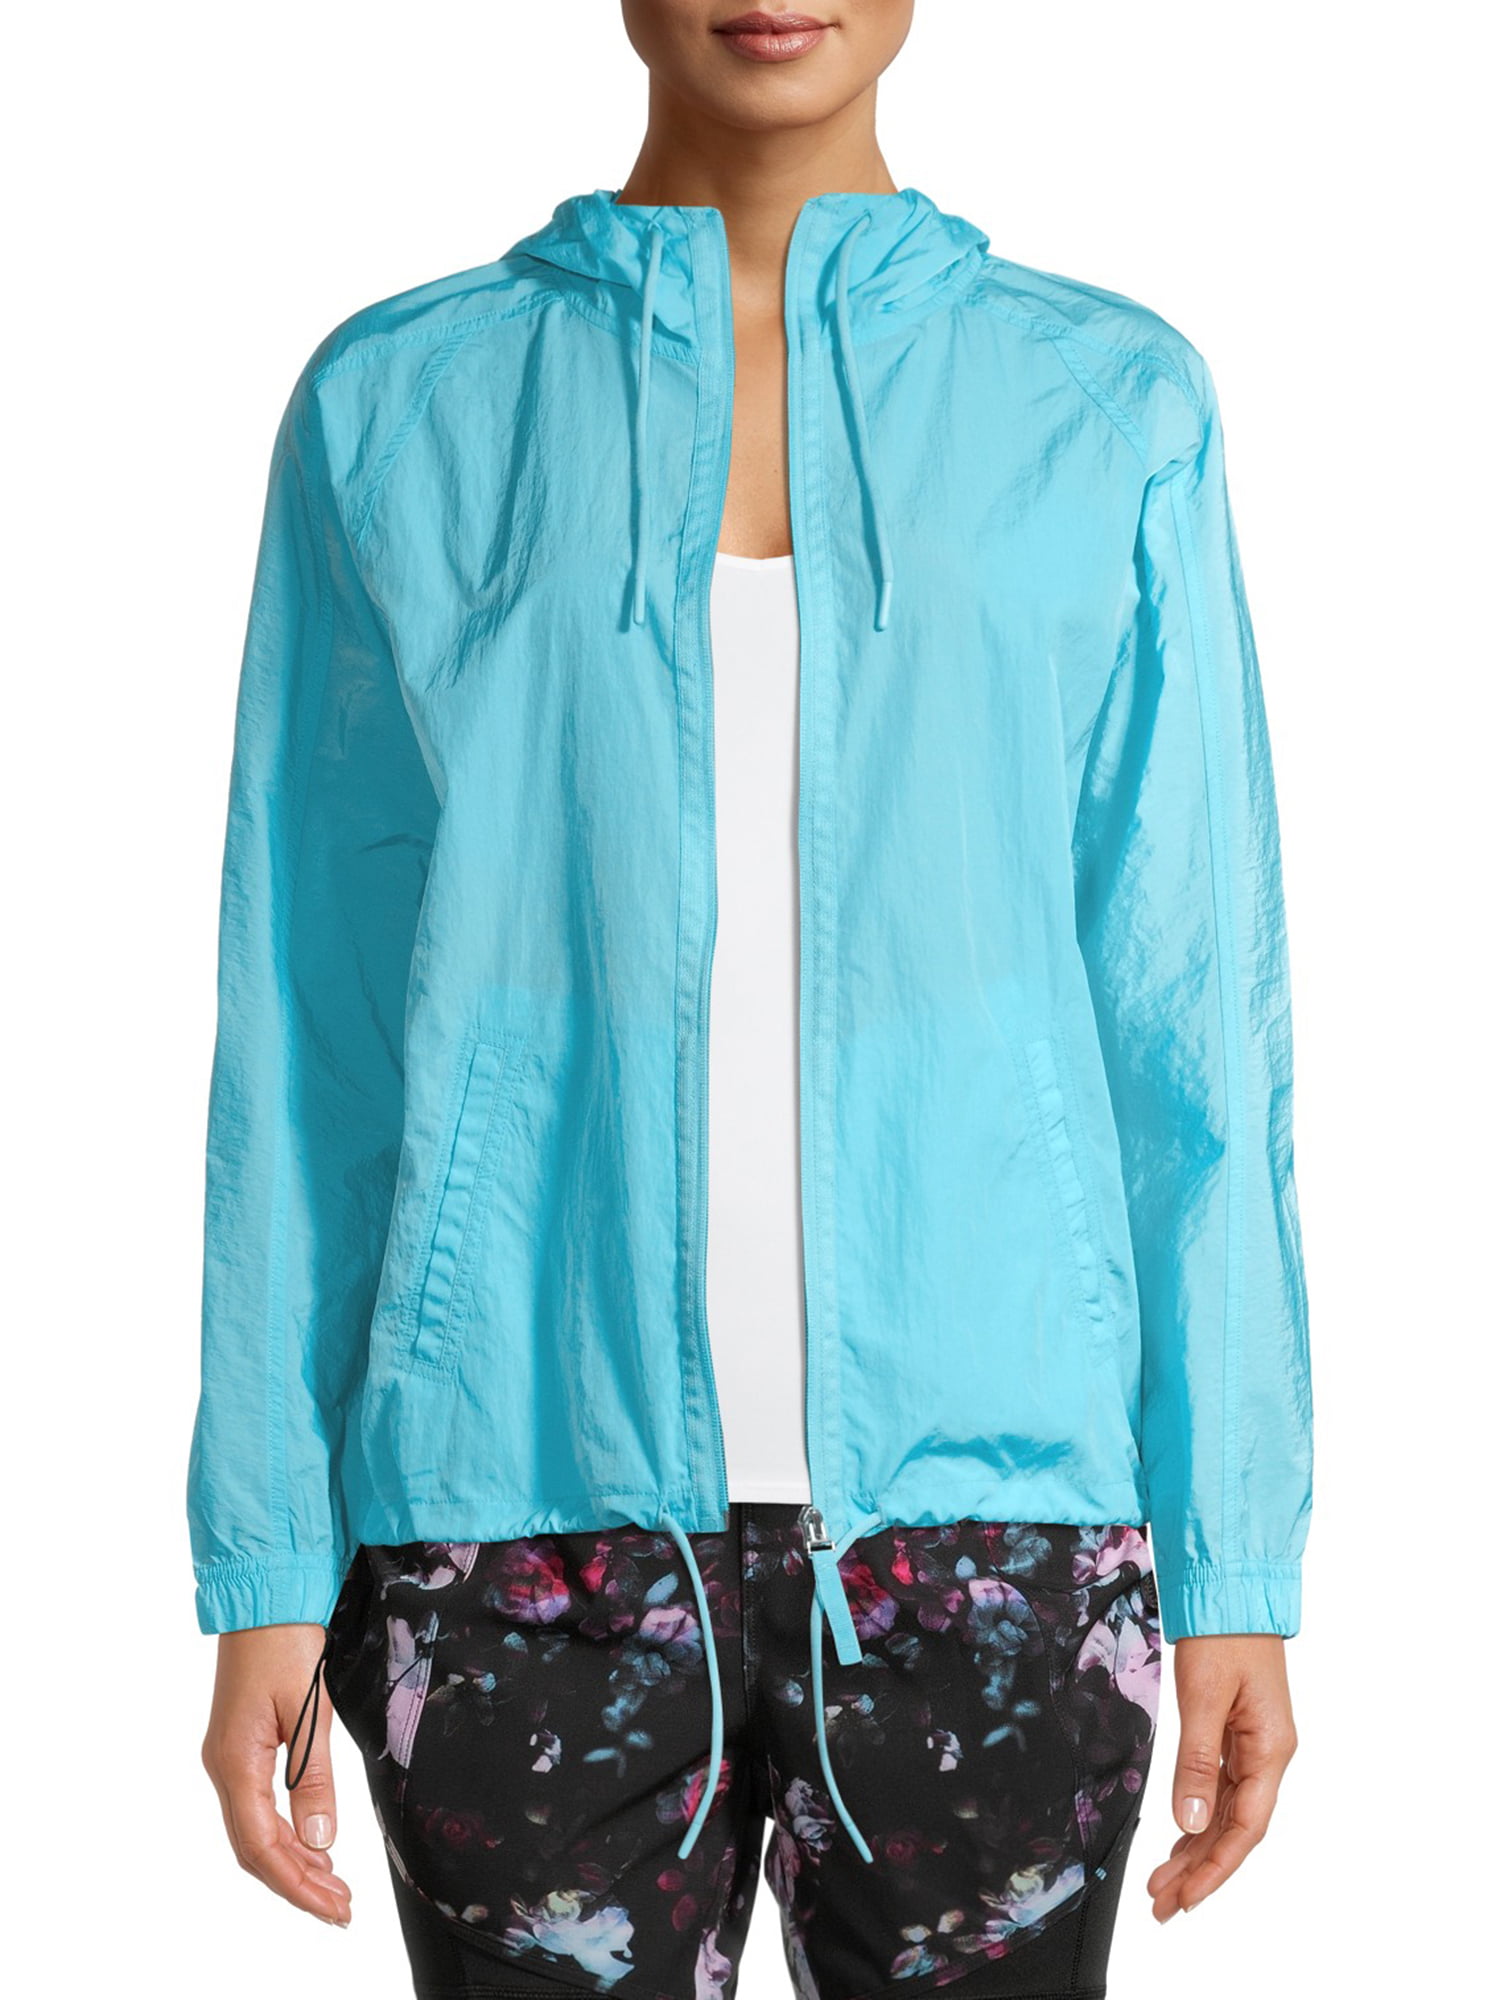 Avia Womens Short Sleeve Windbreaker Hoodie Vest Jacket or Top